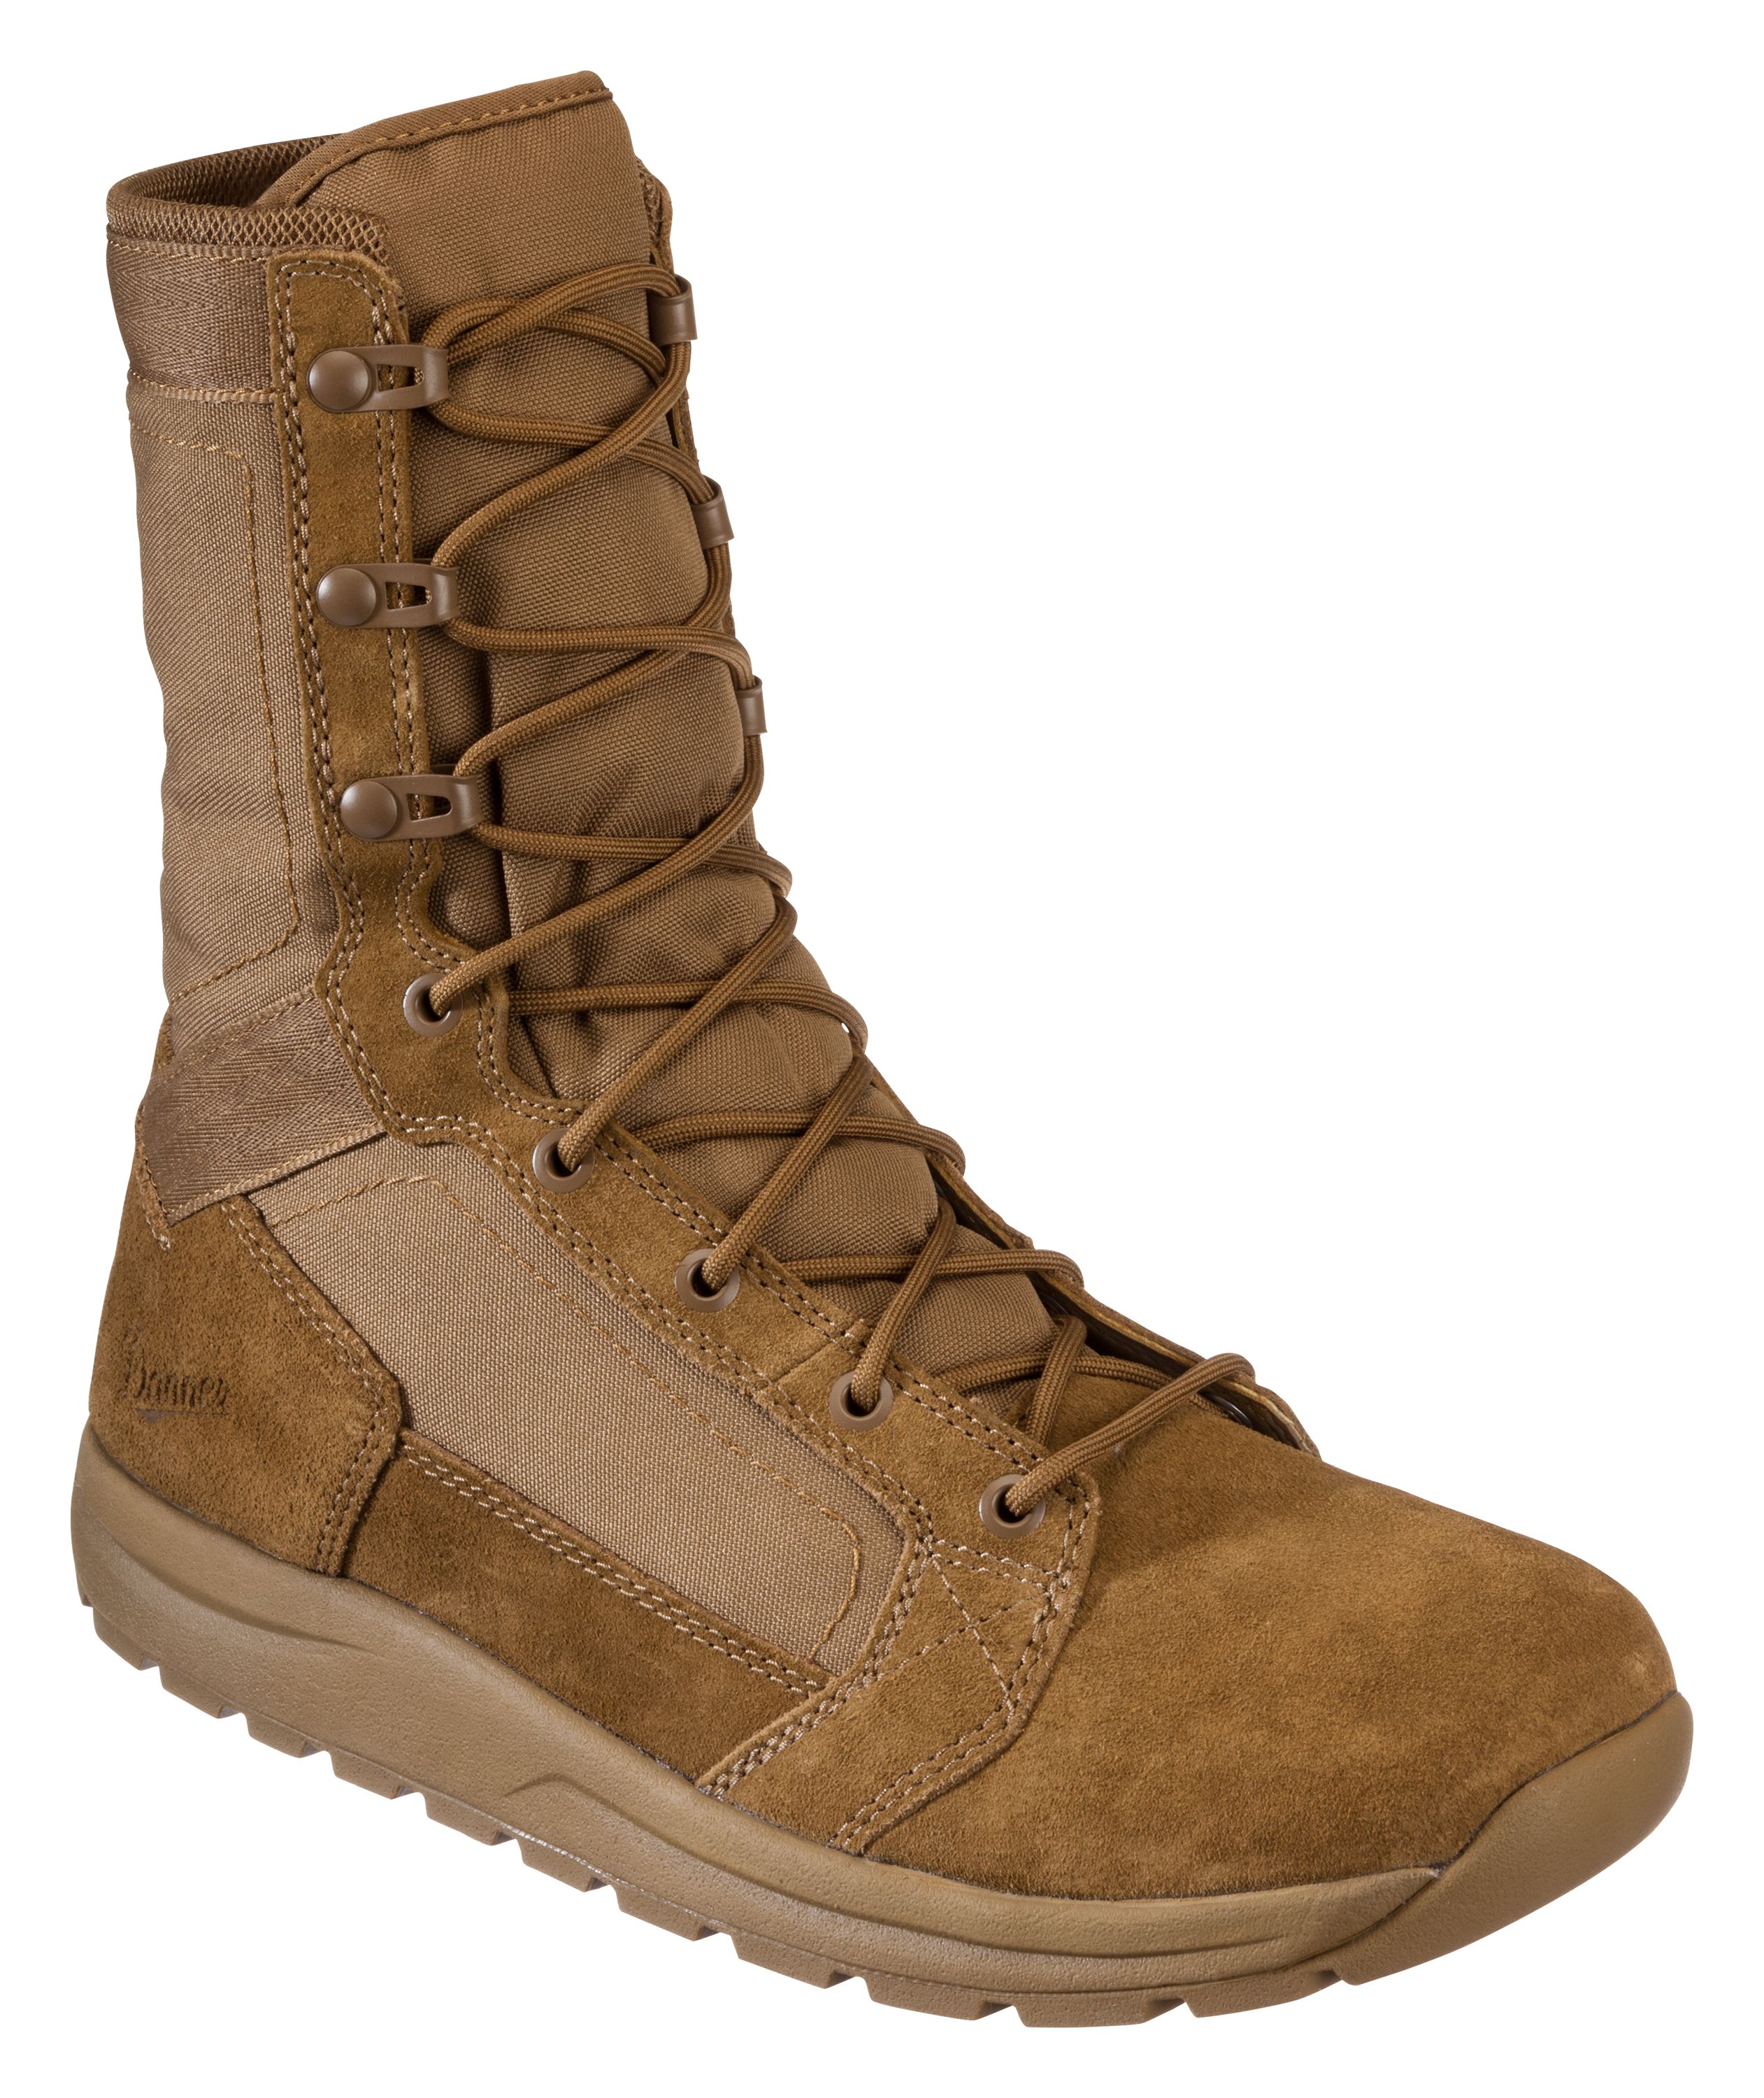 Danner Tachyon Tactical Boots for Men - Coyote - 11.5M